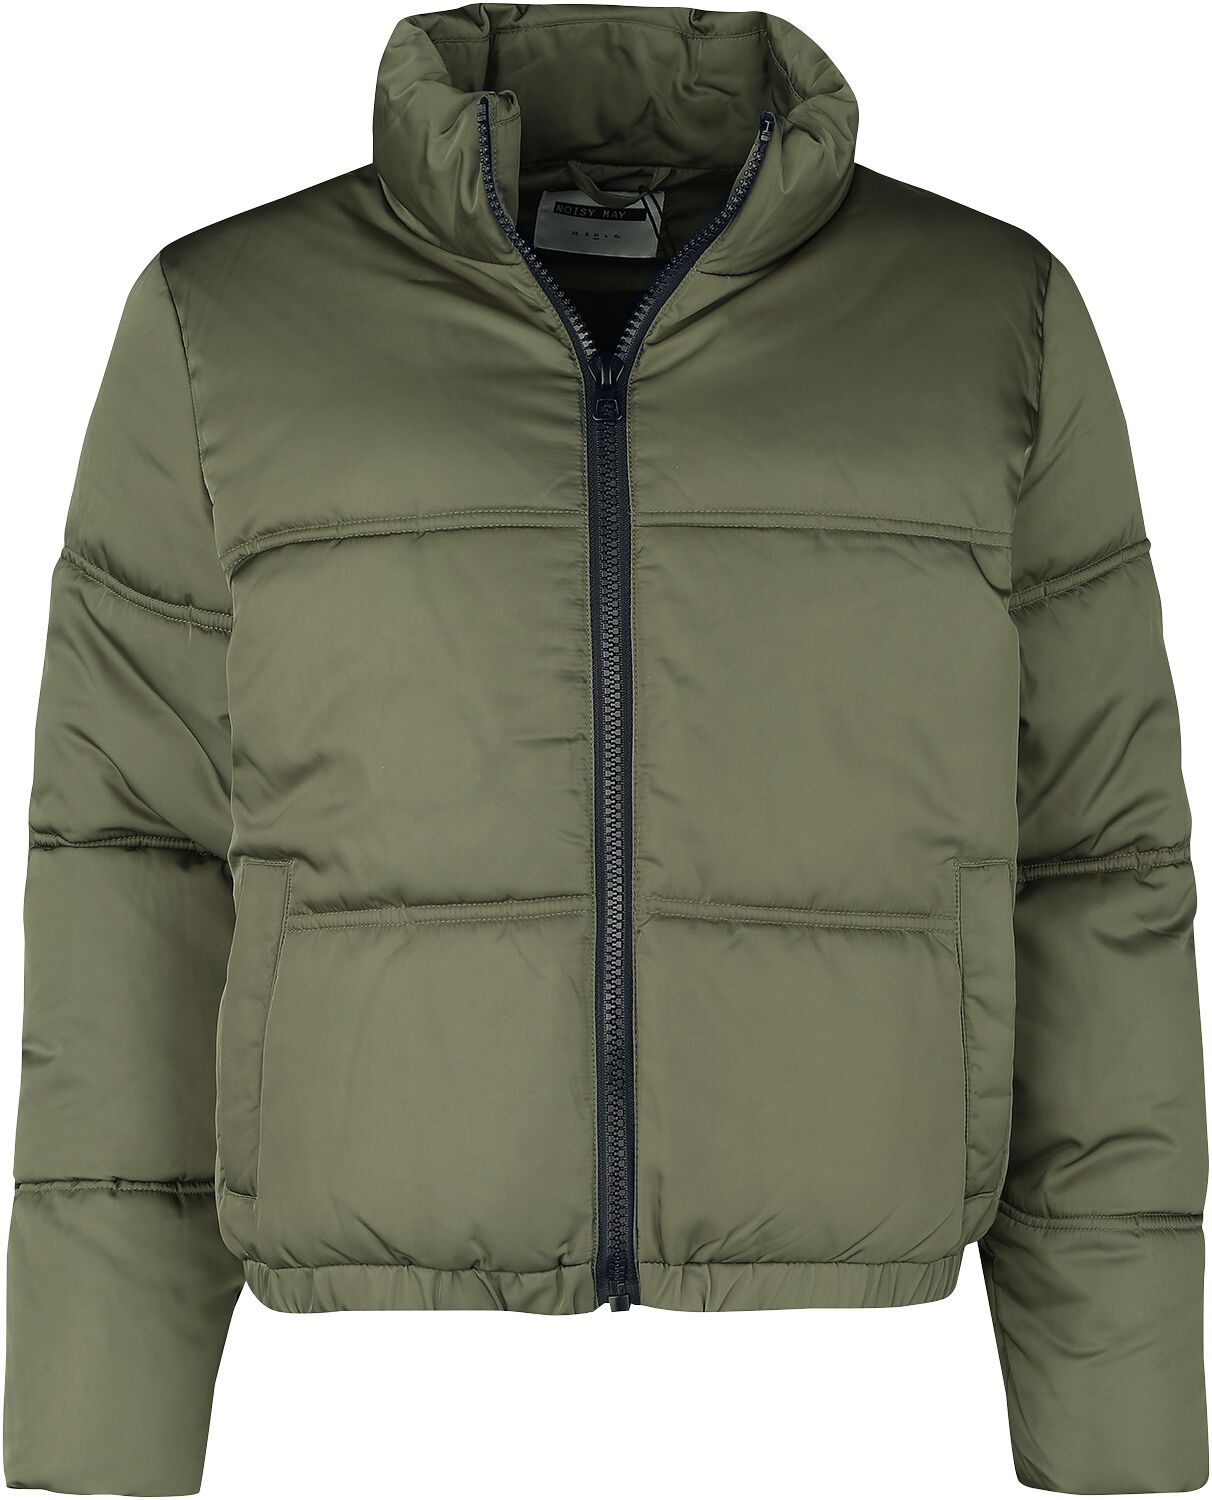 Veste d'hiver de Noisy May - NMAnni Jacket - XS à L - pour Femme - olive